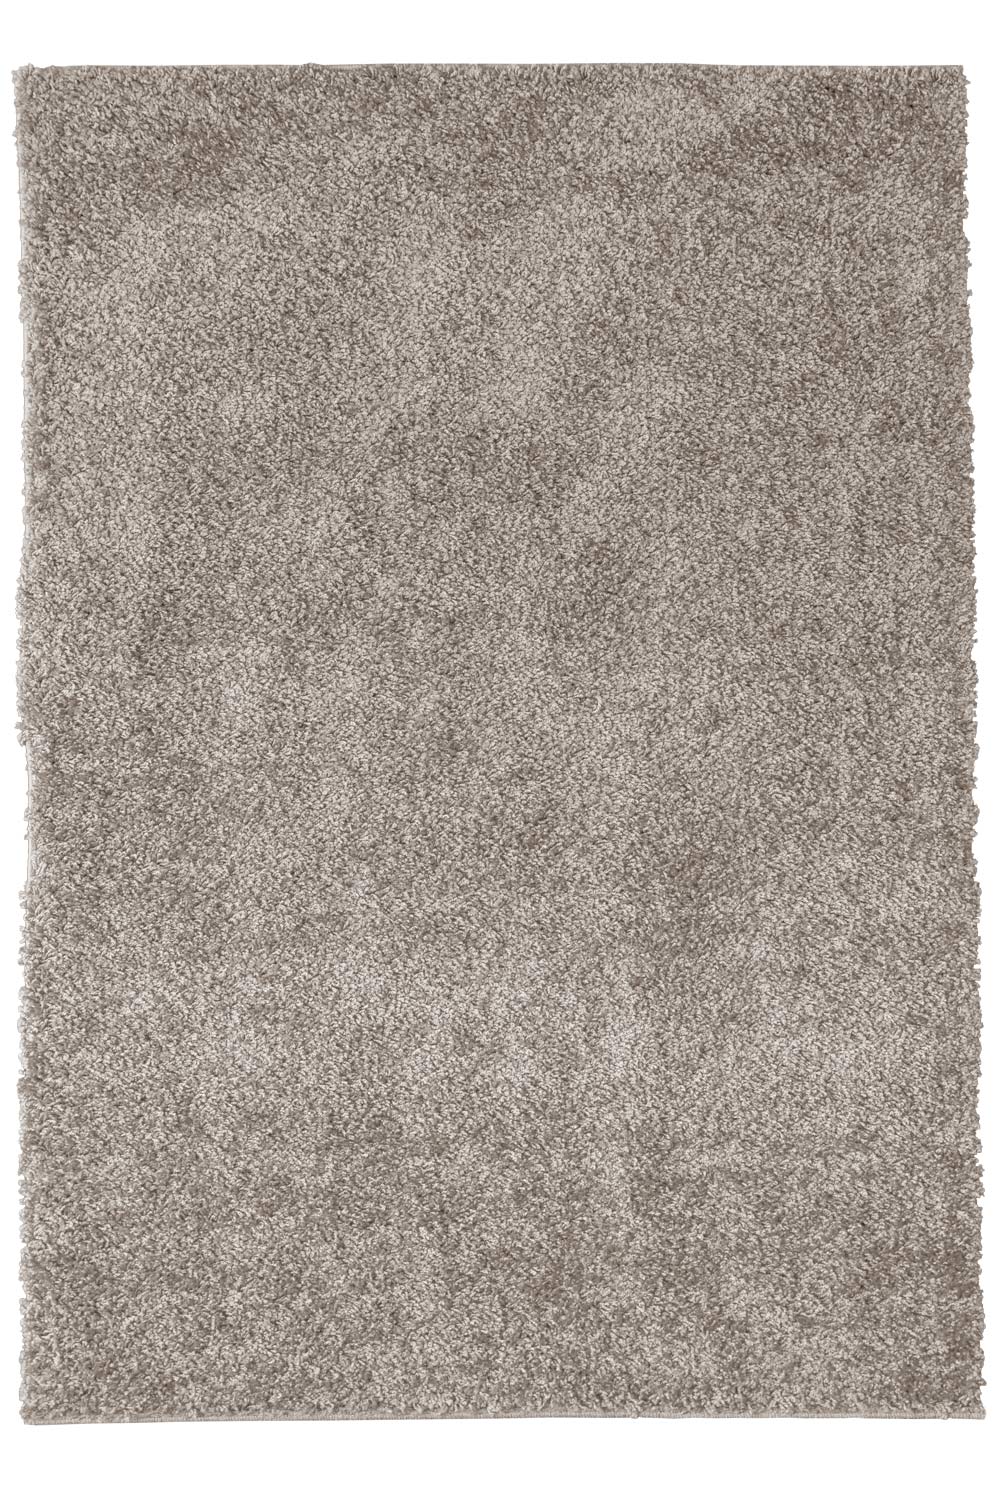 Kusový koberec LIFE SHAGGY 1500 beige 160x230 cm